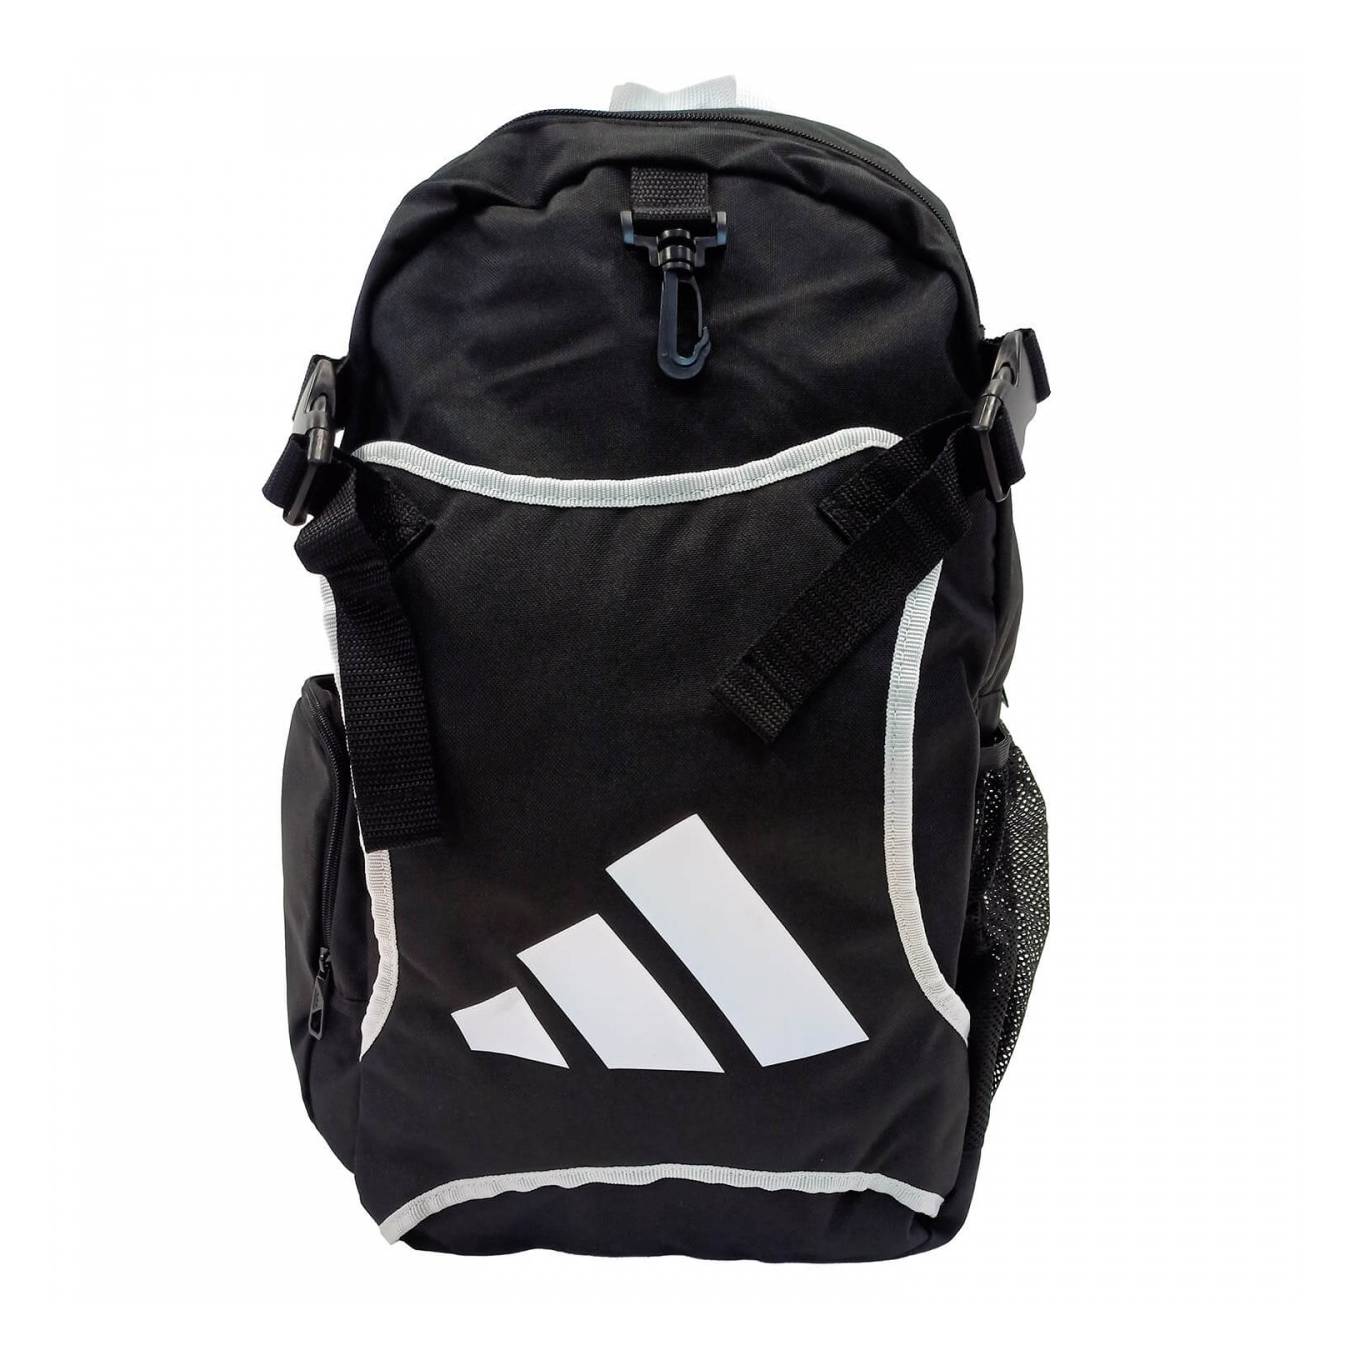 Sport Bag Adidas TKD BODY PROTECTOR Holder BackPack Std, Black